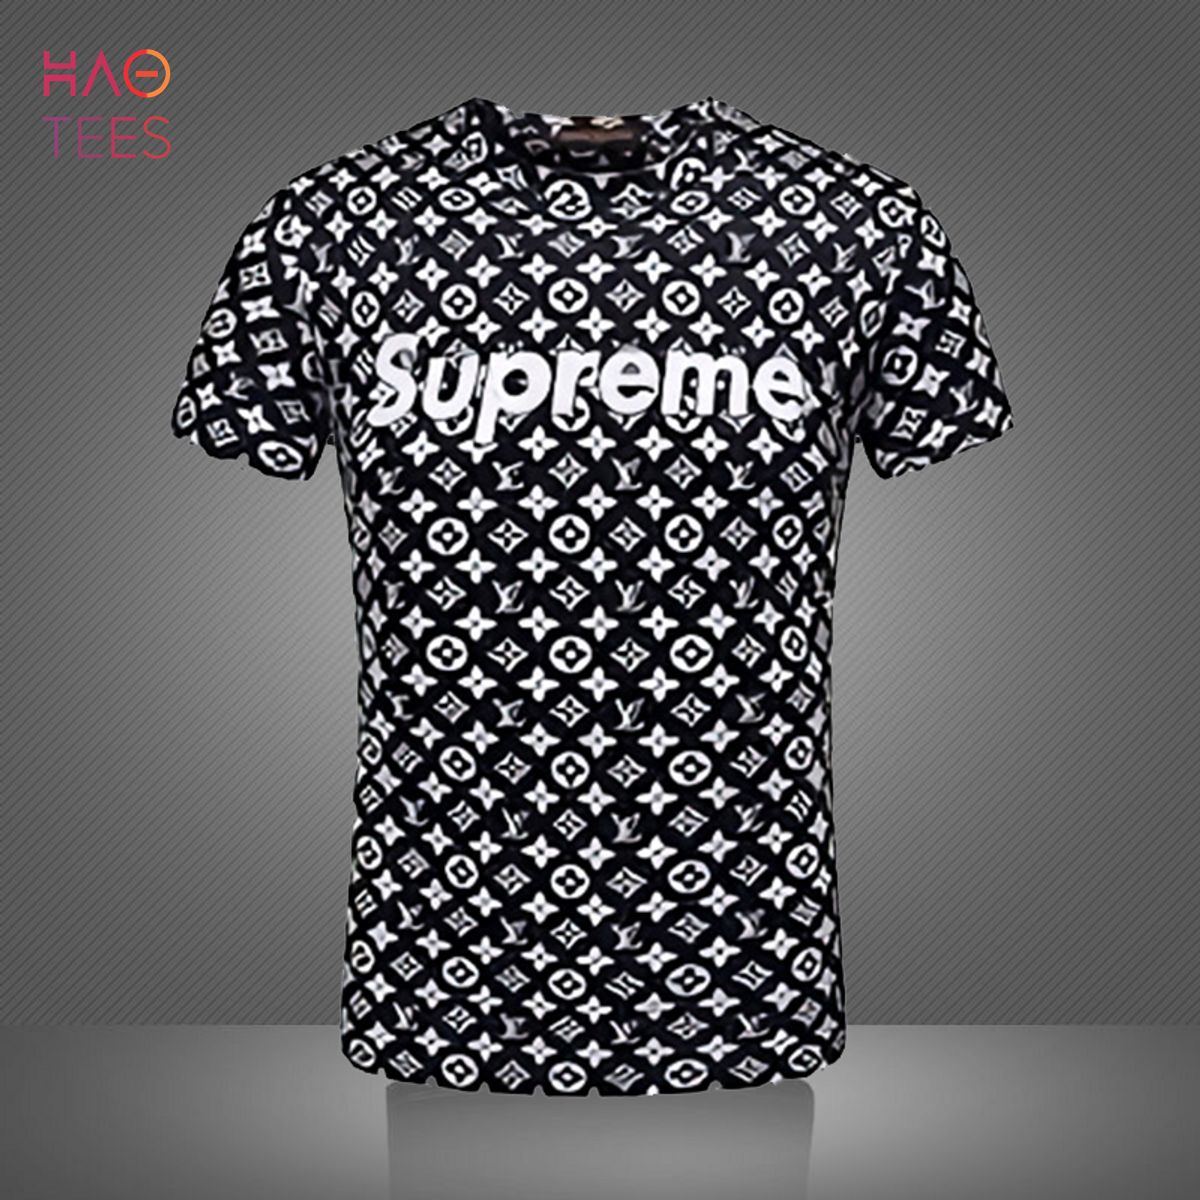 supreme lv shirt